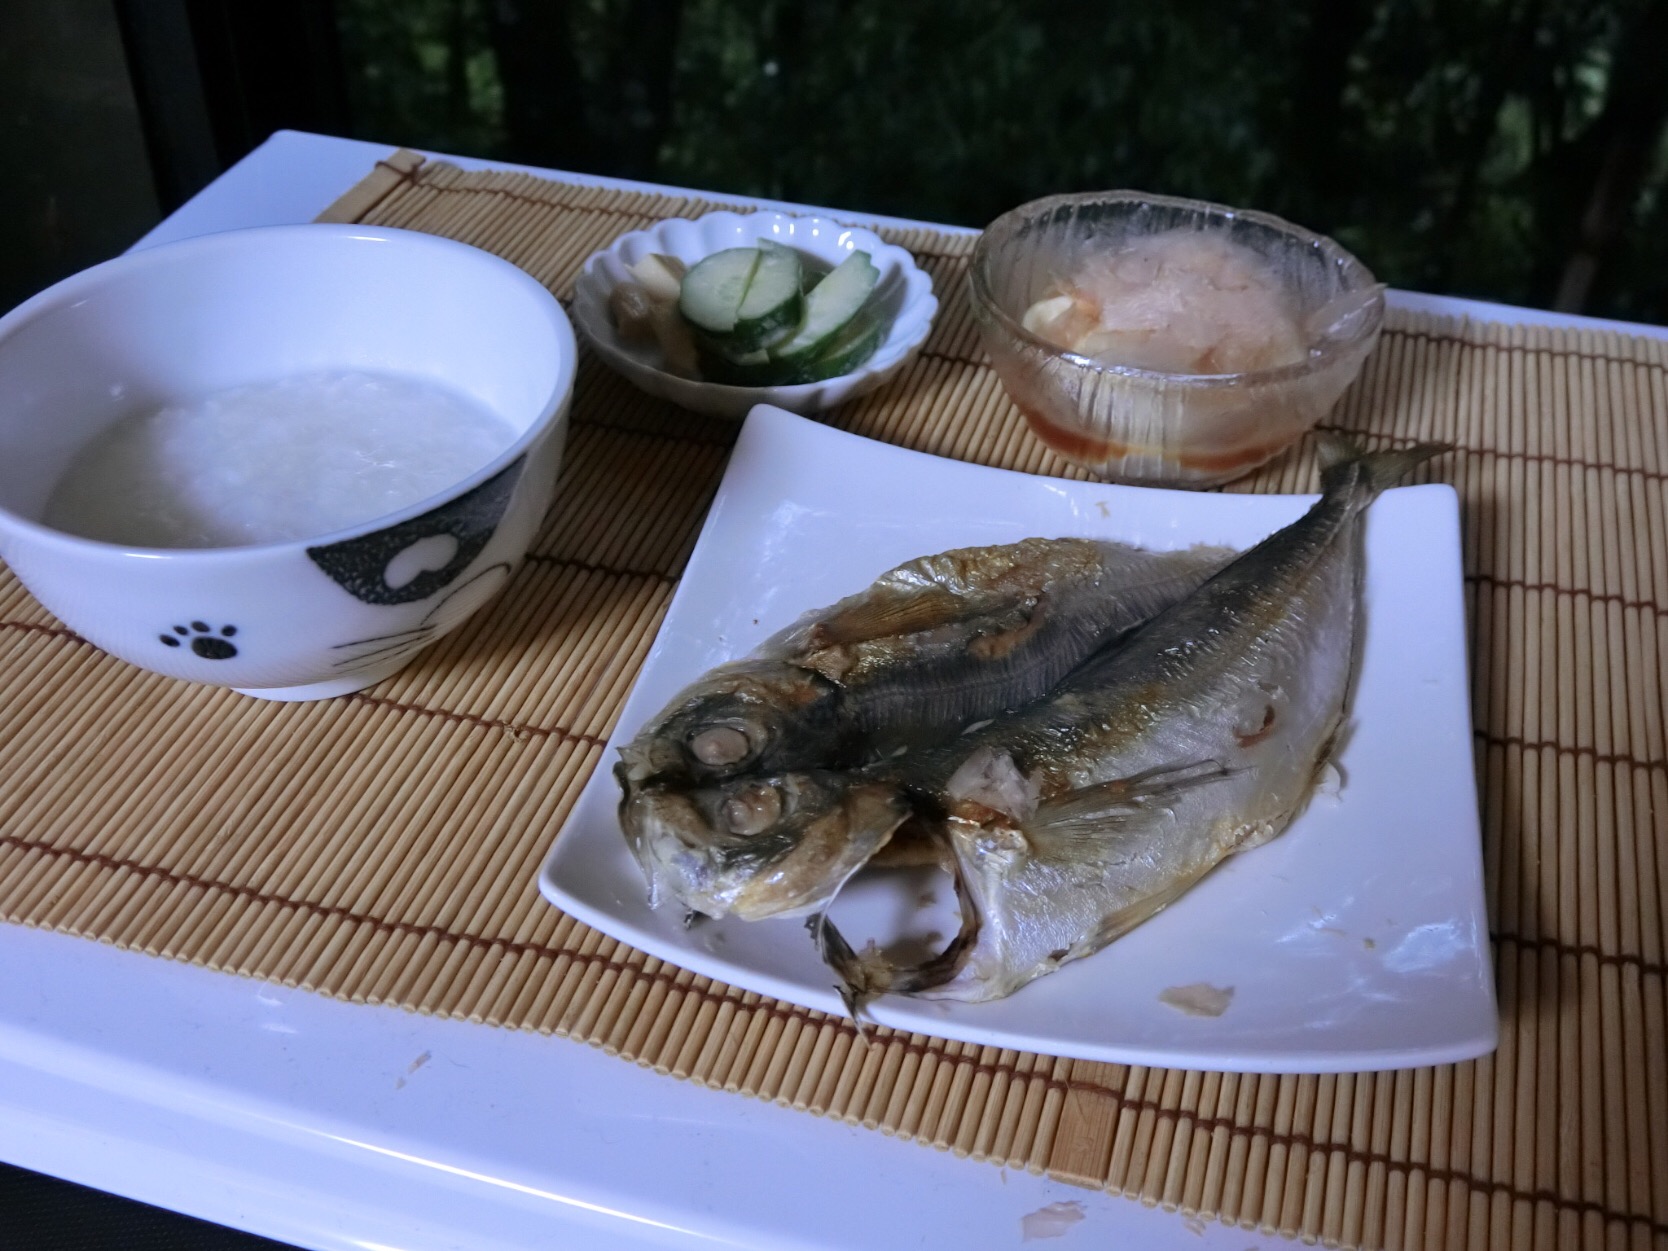 晩ご飯
アップしたと思い間違いをした💦

味の干物
冷やし豆腐
キューリとイカのワサビマヨ
お粥